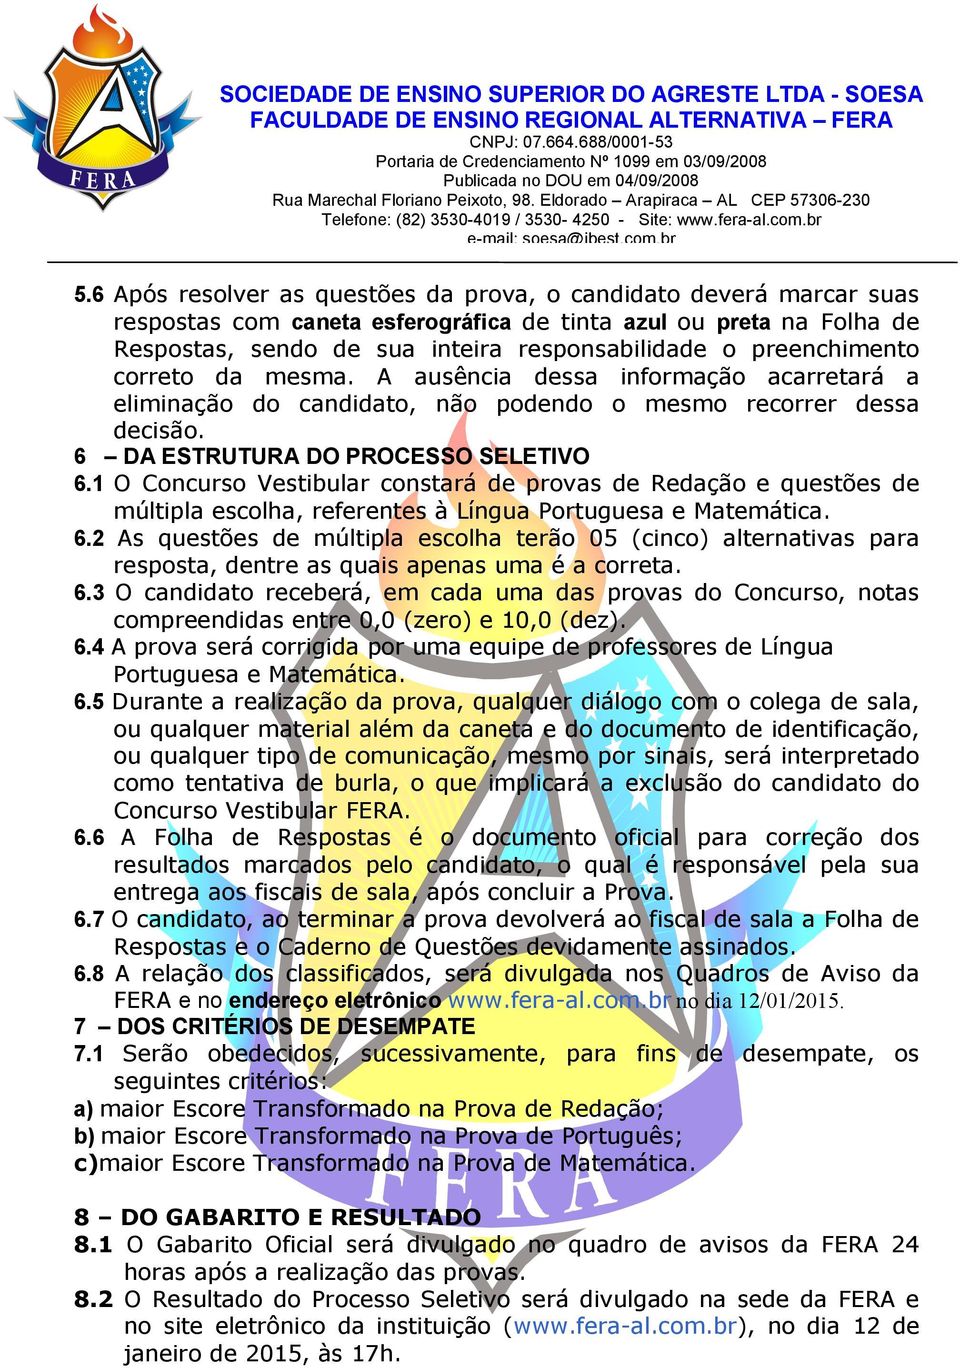 1 O Concurso Vestibular constará de provas de Redação e questões de múltipla escolha, referentes à Língua Portuguesa e Matemática. 6.